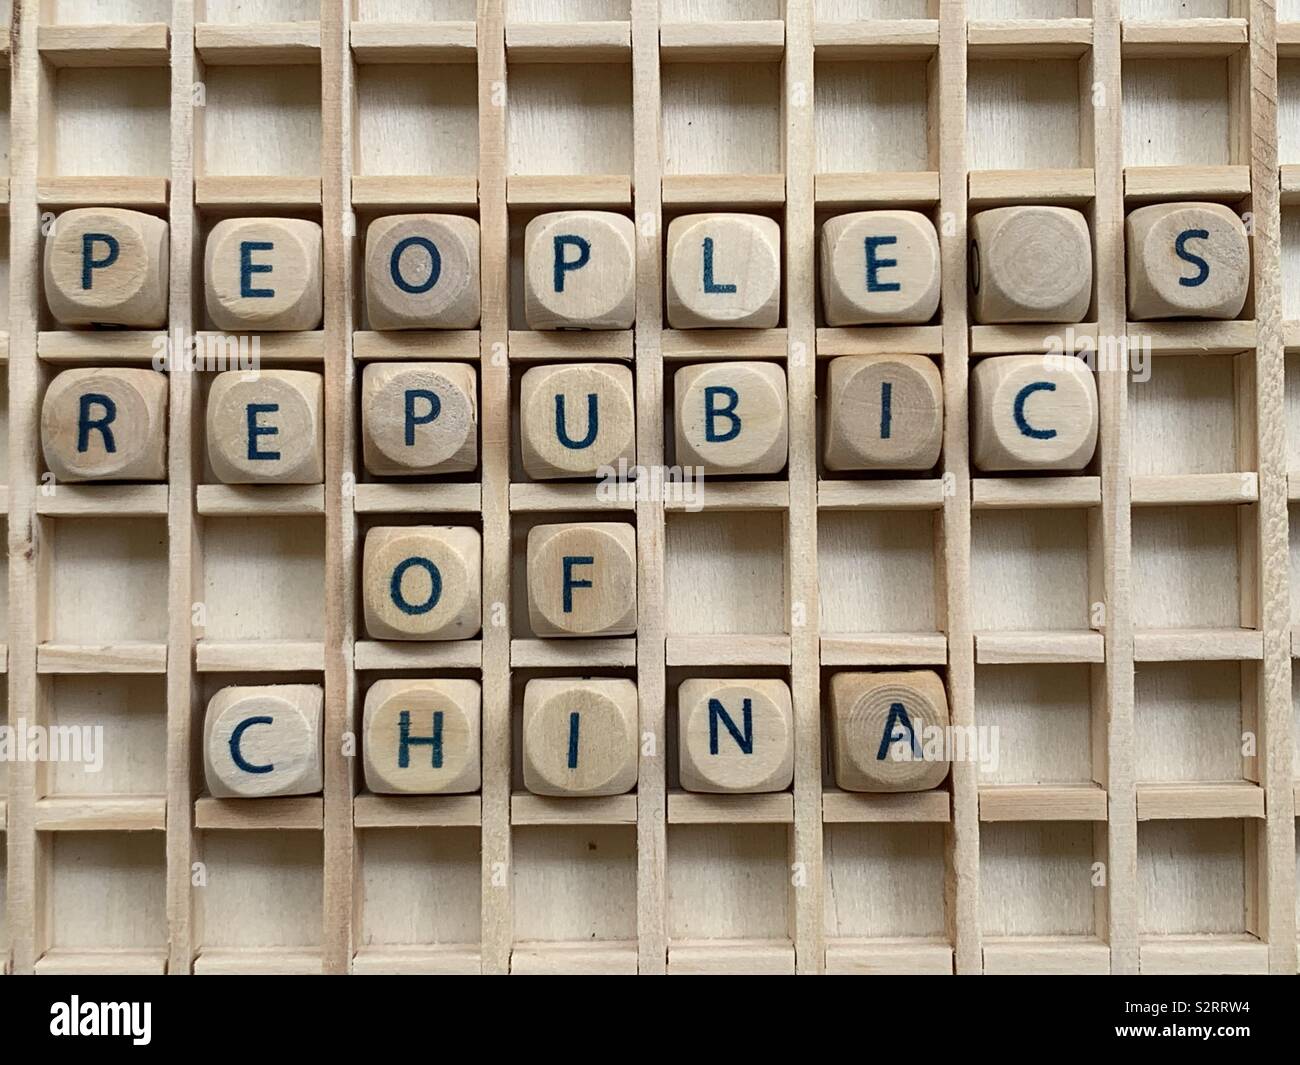 Die Volksrepublik China, Land Name besteht aus Holz Würfel Würfel Buchstaben Stockfoto